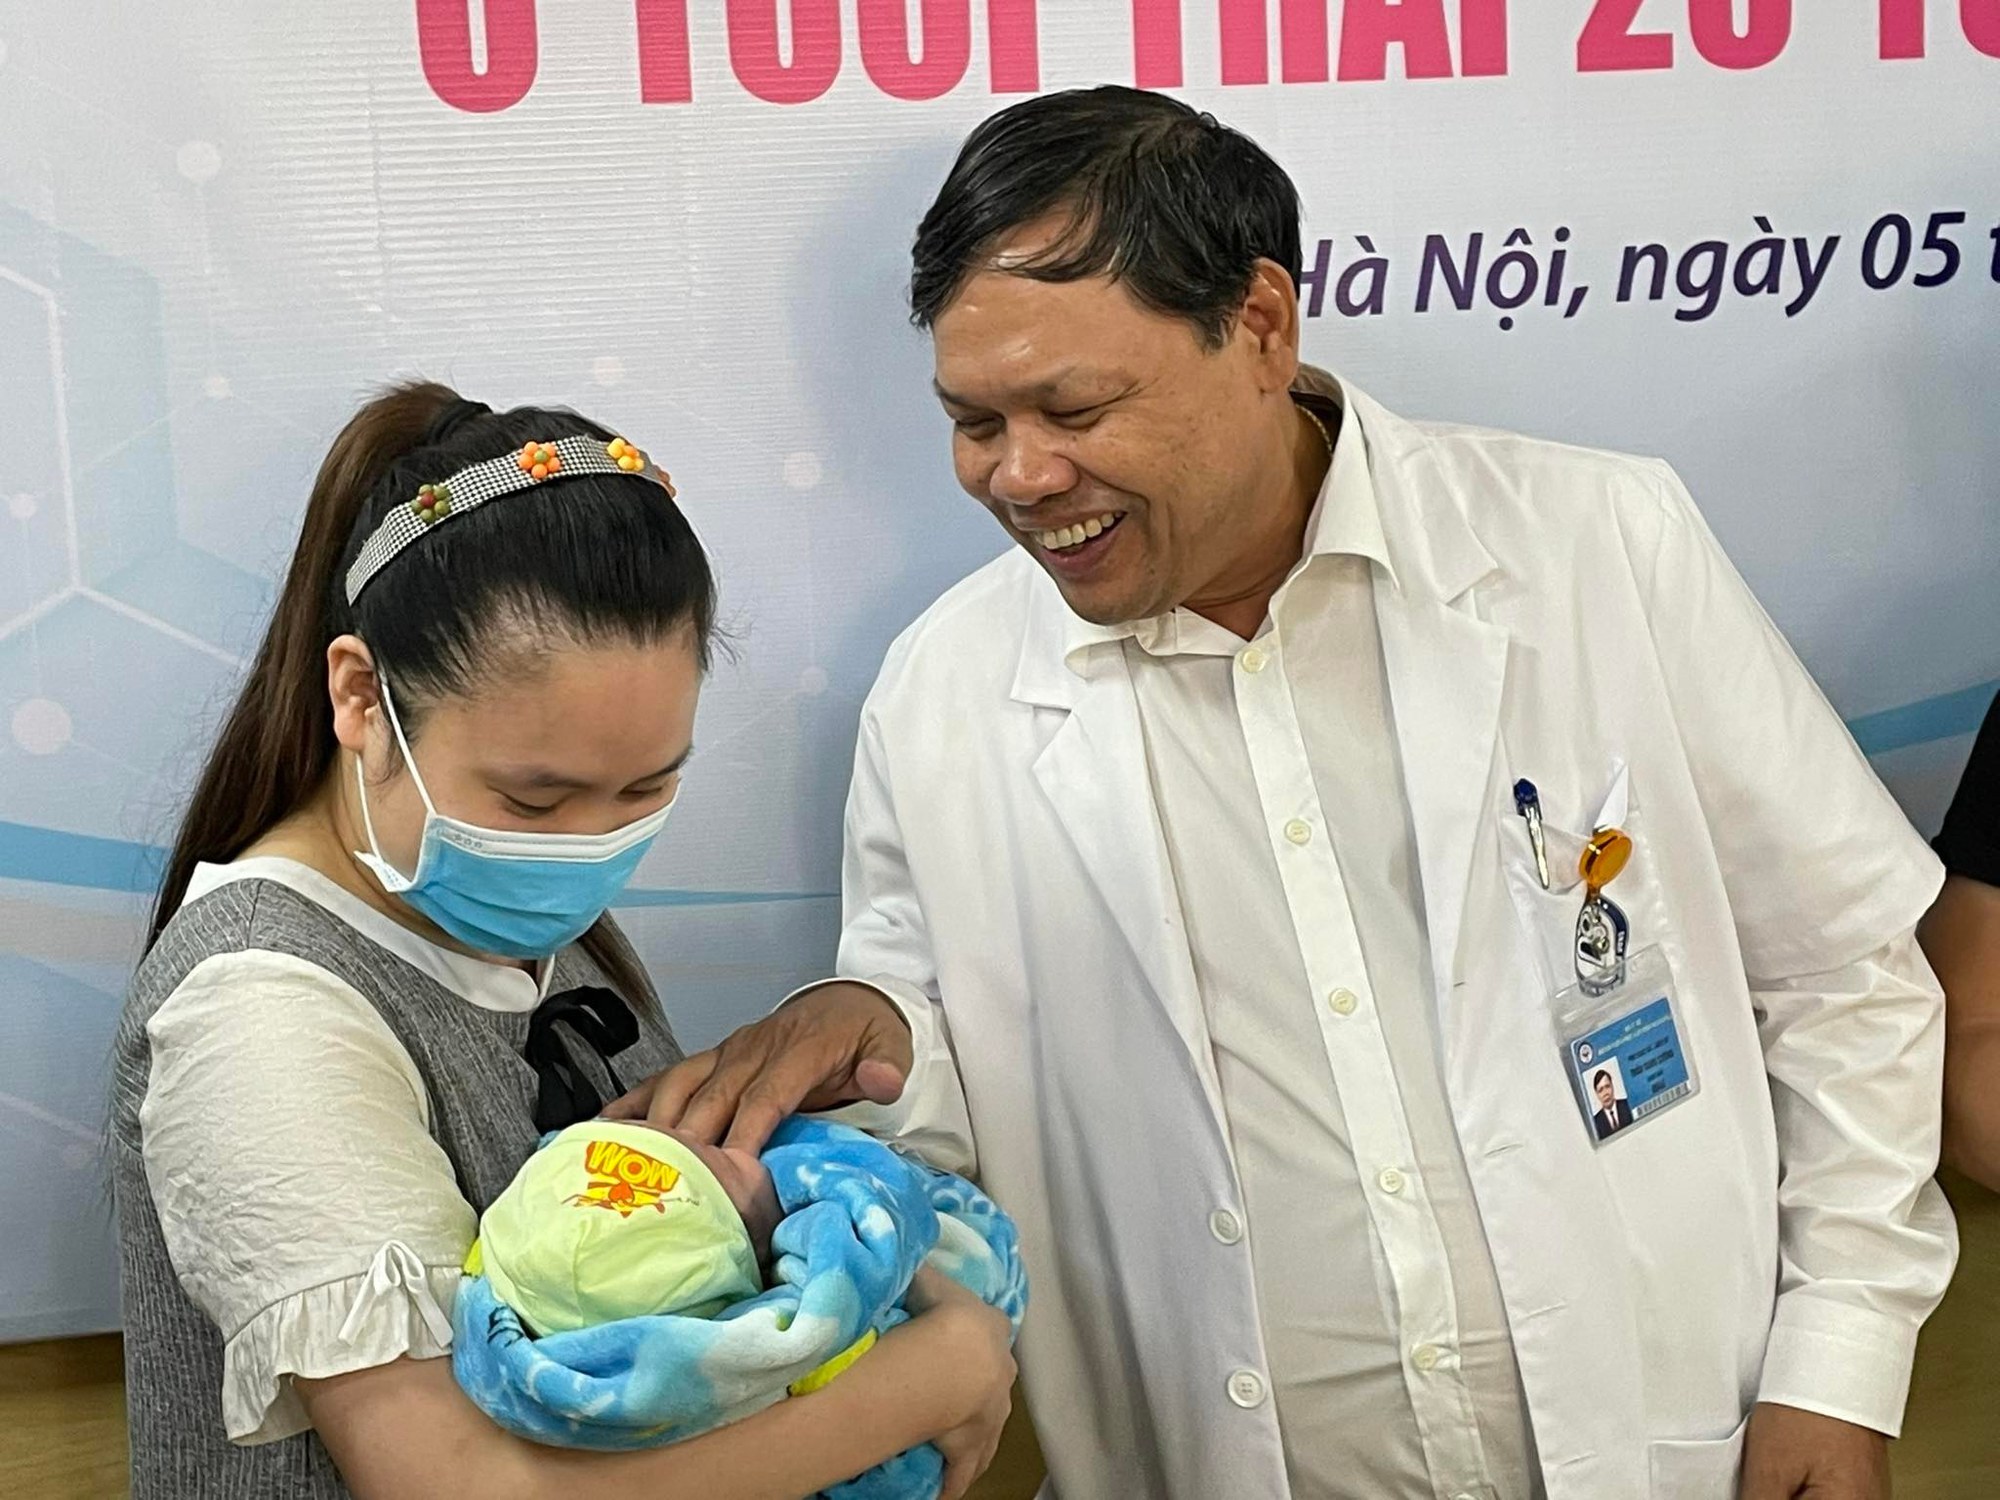 Kỳ diệu: Lần đầu tiên tại Việt Nam nuôi sống thành công cặp song sinh nặng 500gram, chào đời tuần thai thứ 25 - Ảnh 4.